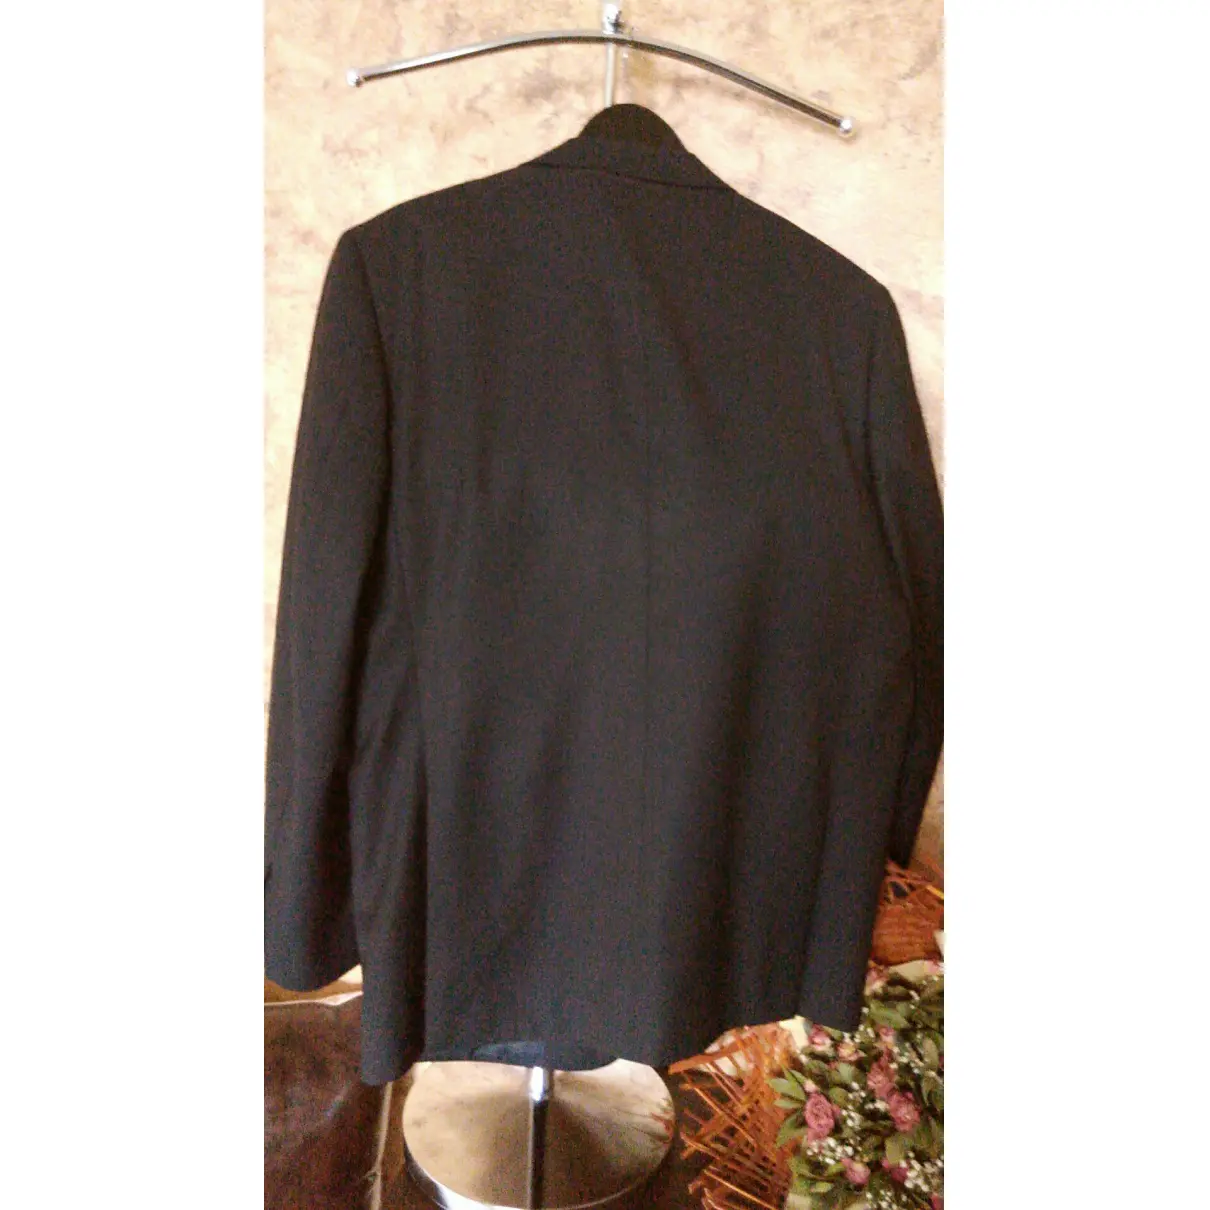 Buy Pierre Cardin Wool jacket online - Vintage